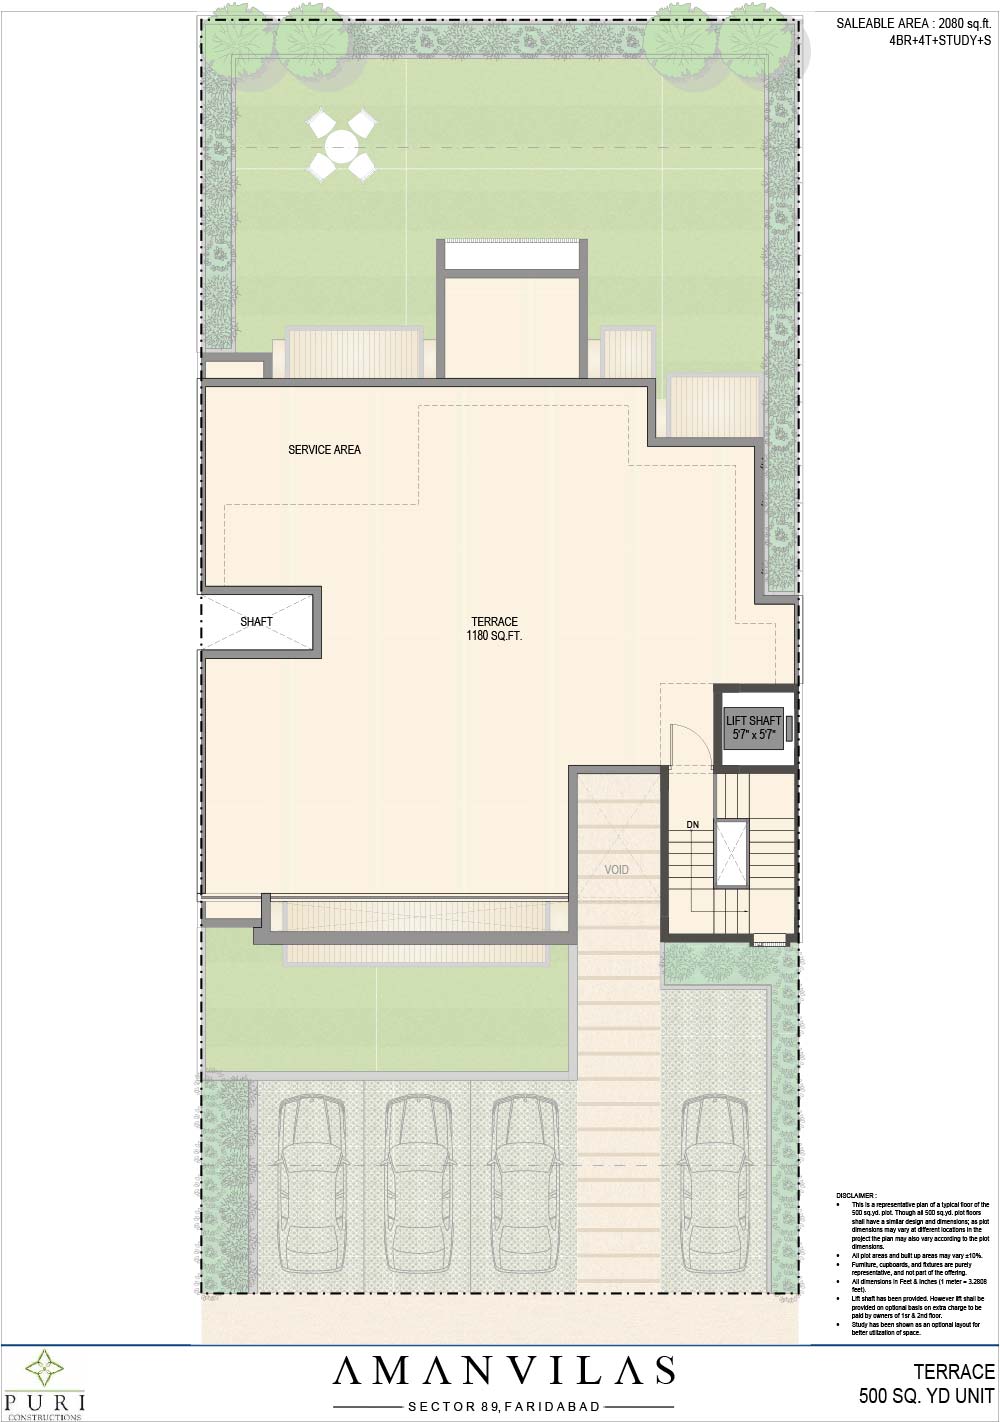 Floor Plan of 500 sq.yd. Puri AmanVilas Faridabad